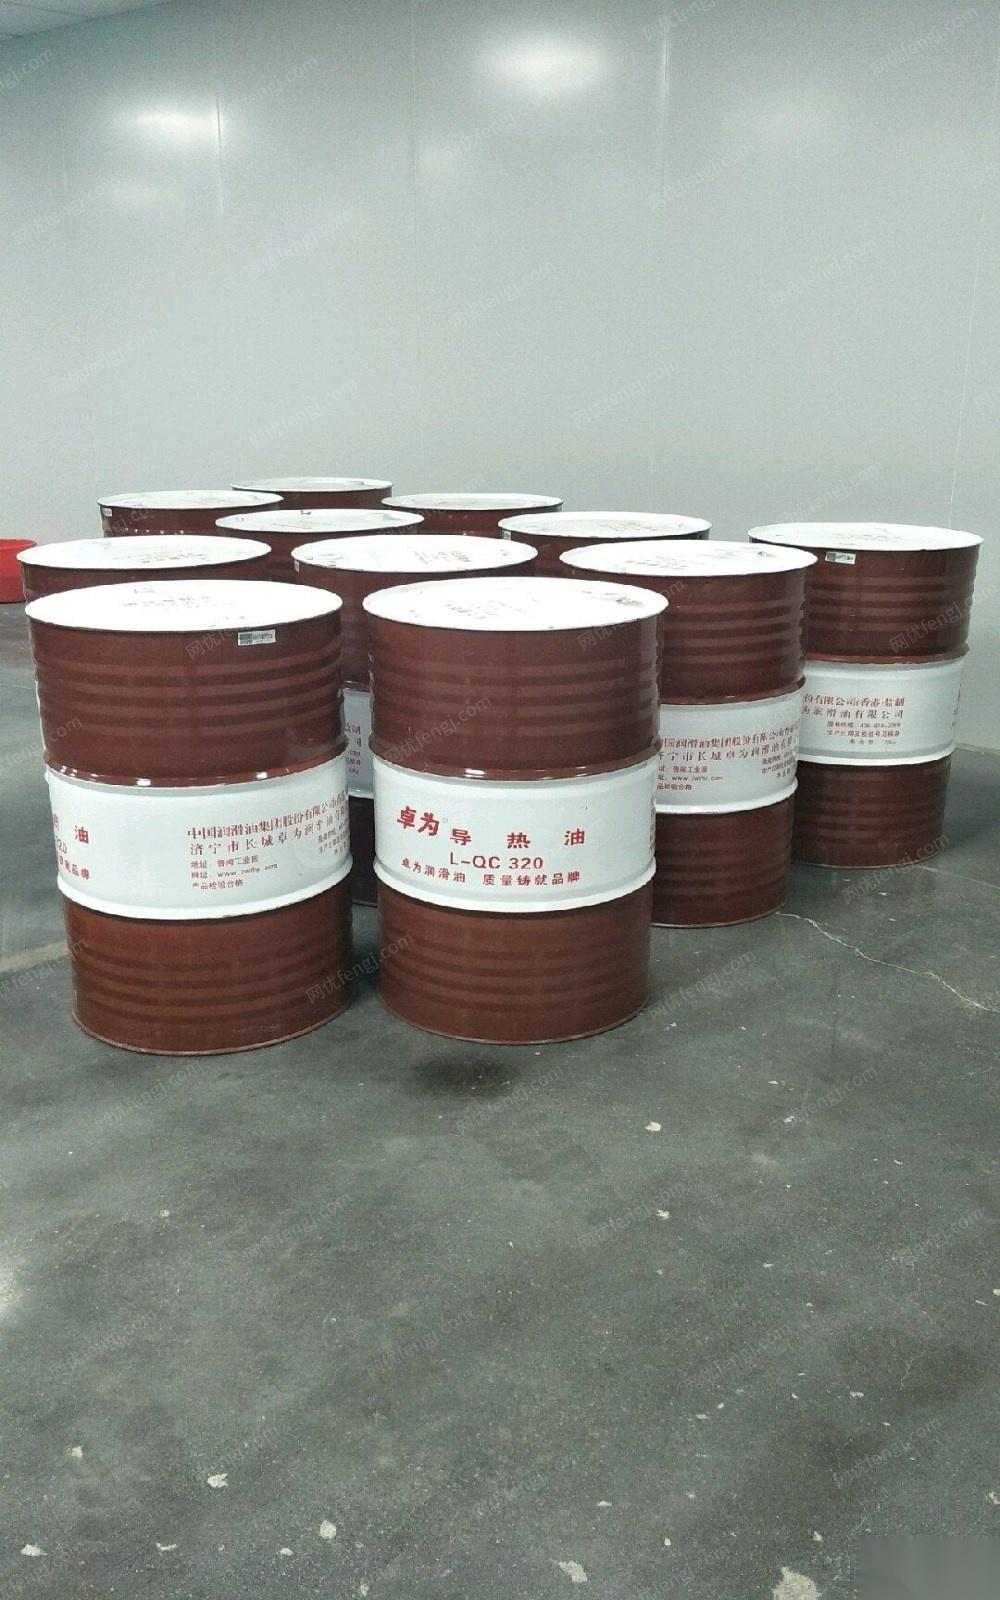 上海松江区出售长城卓为导热油l-qc 320 全新未开桶 共10桶 12000元